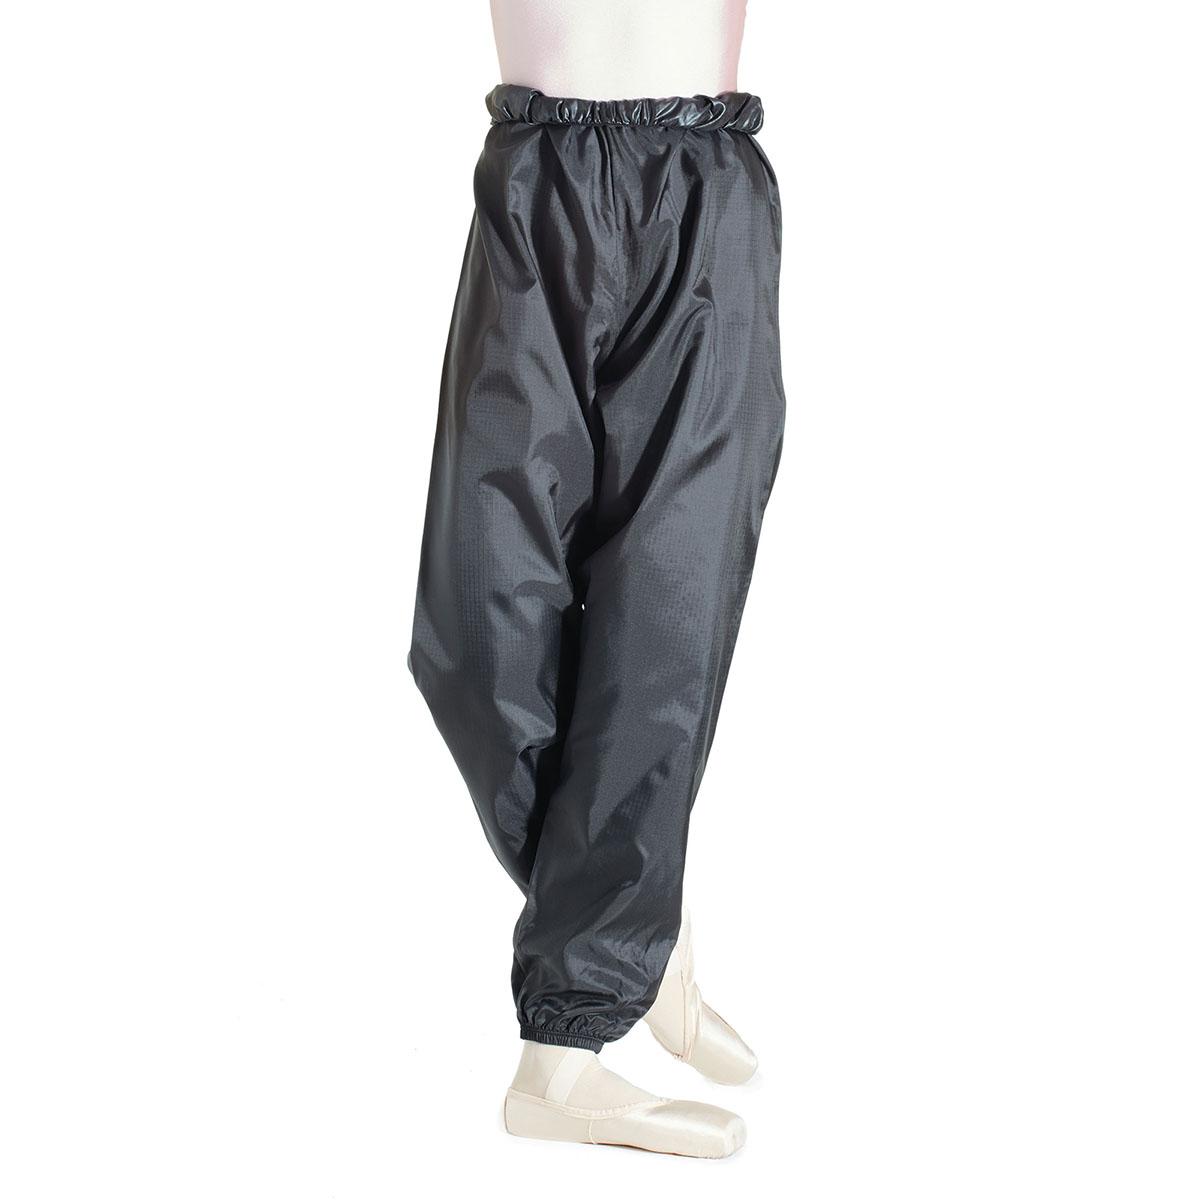 Intermezzo - Ladies Warm-up pants/Practice pants long 5000